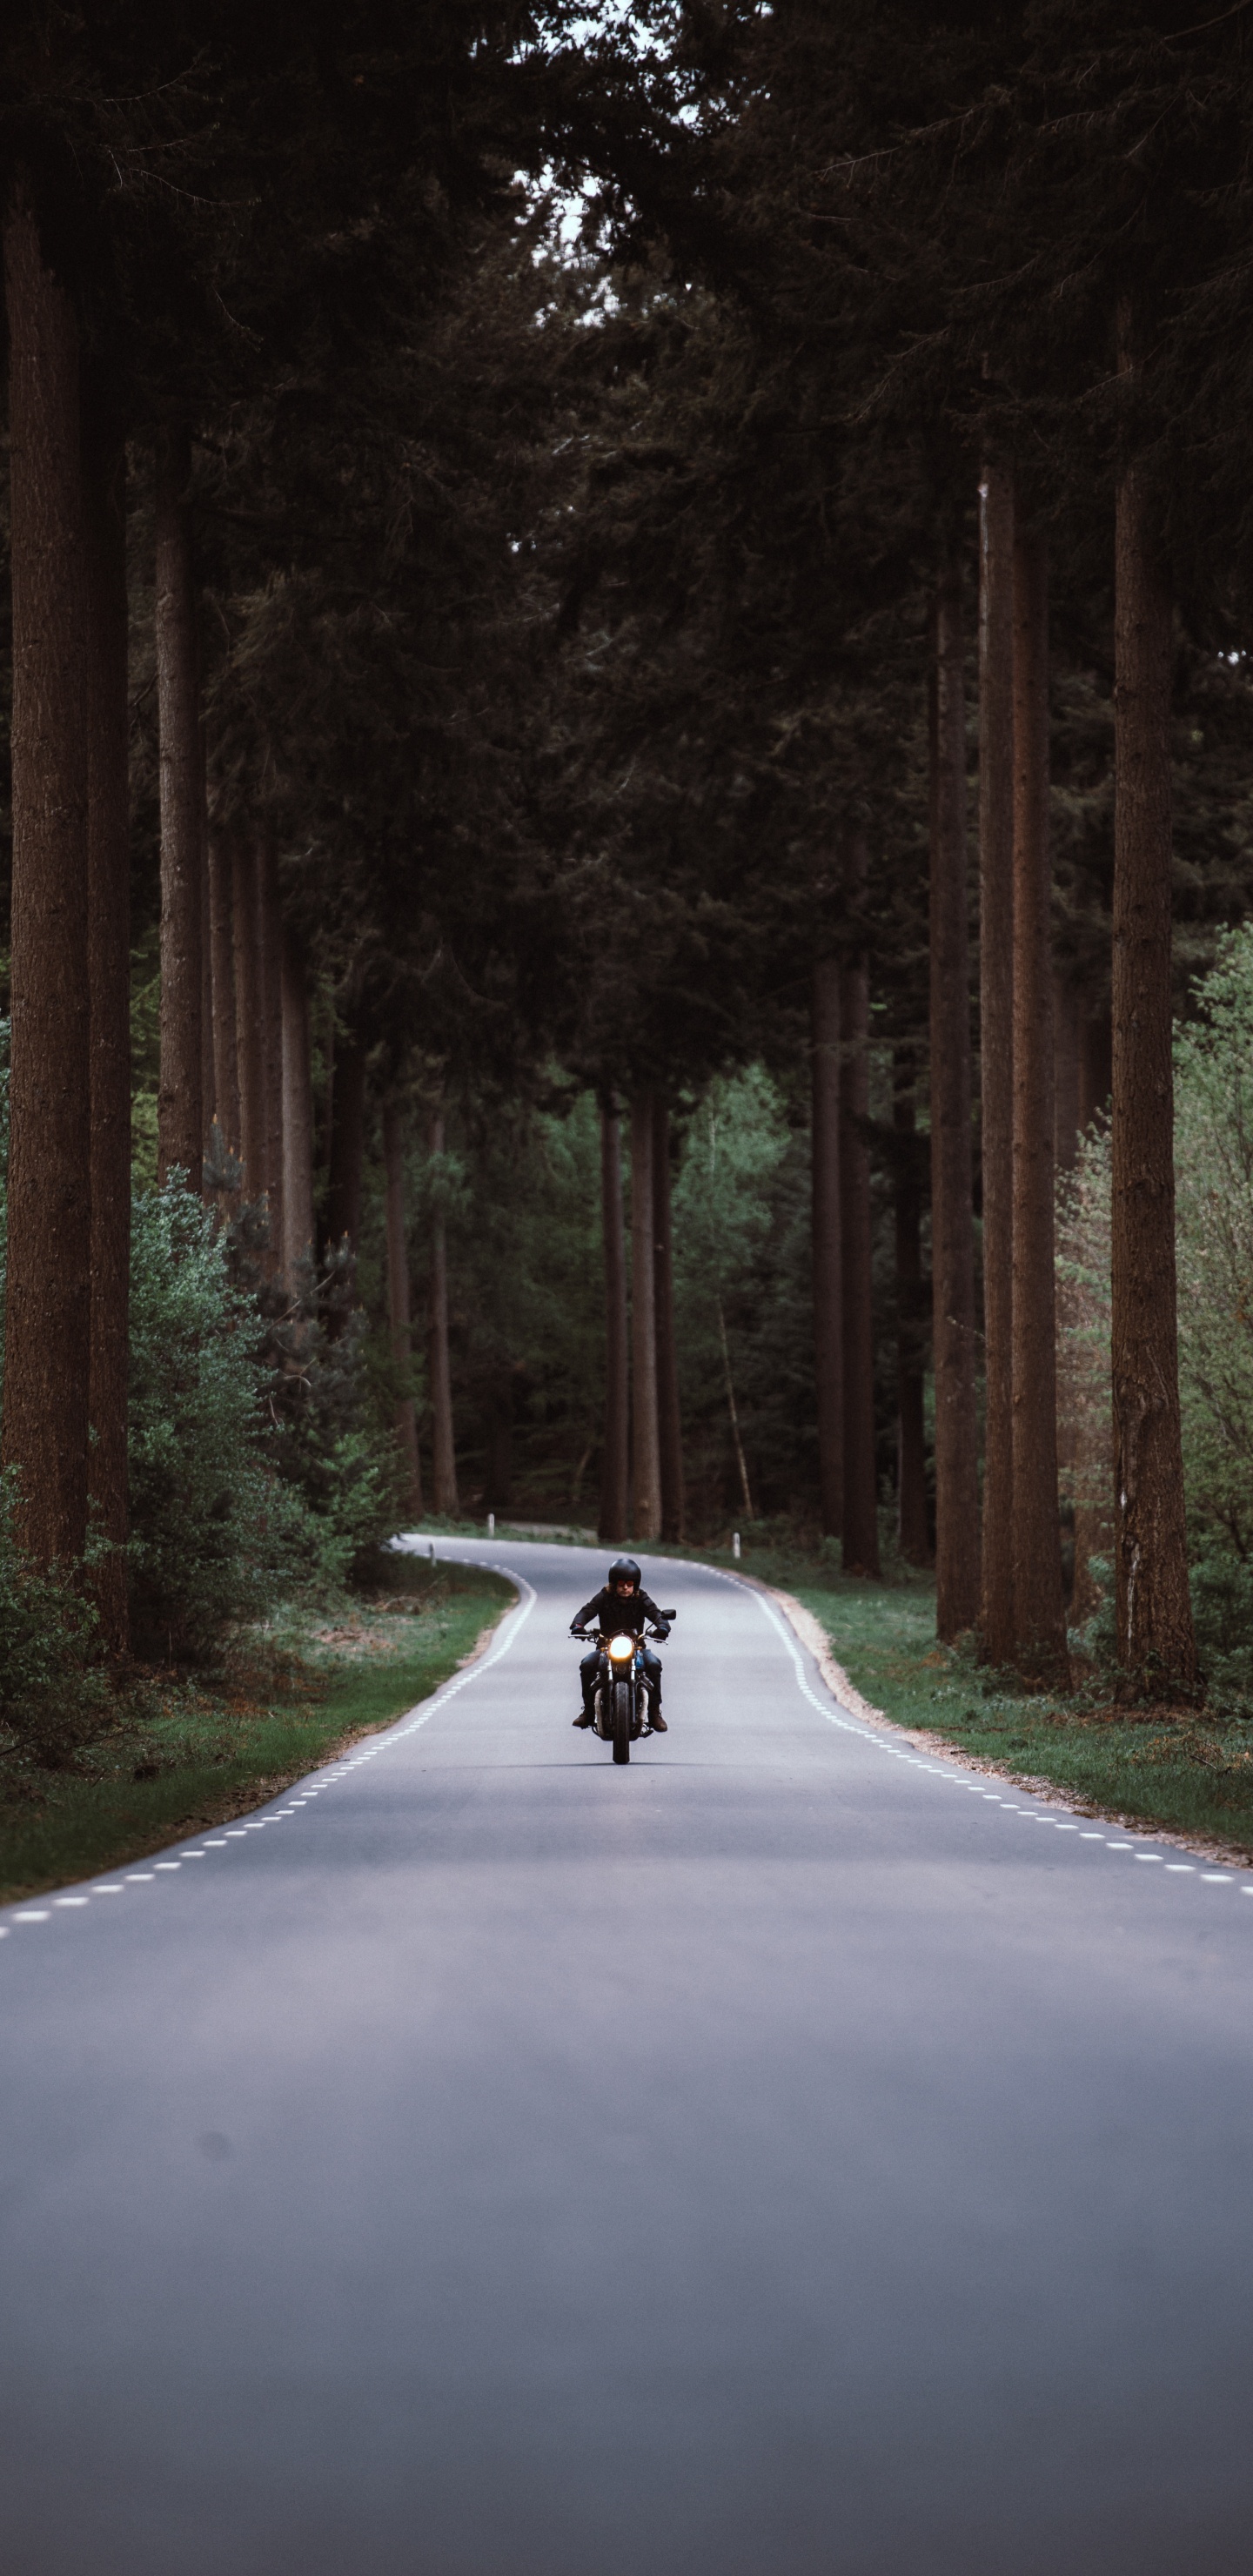 Personne à Moto Sur Route Entre Les Arbres Pendant la Journée. Wallpaper in 1440x2960 Resolution